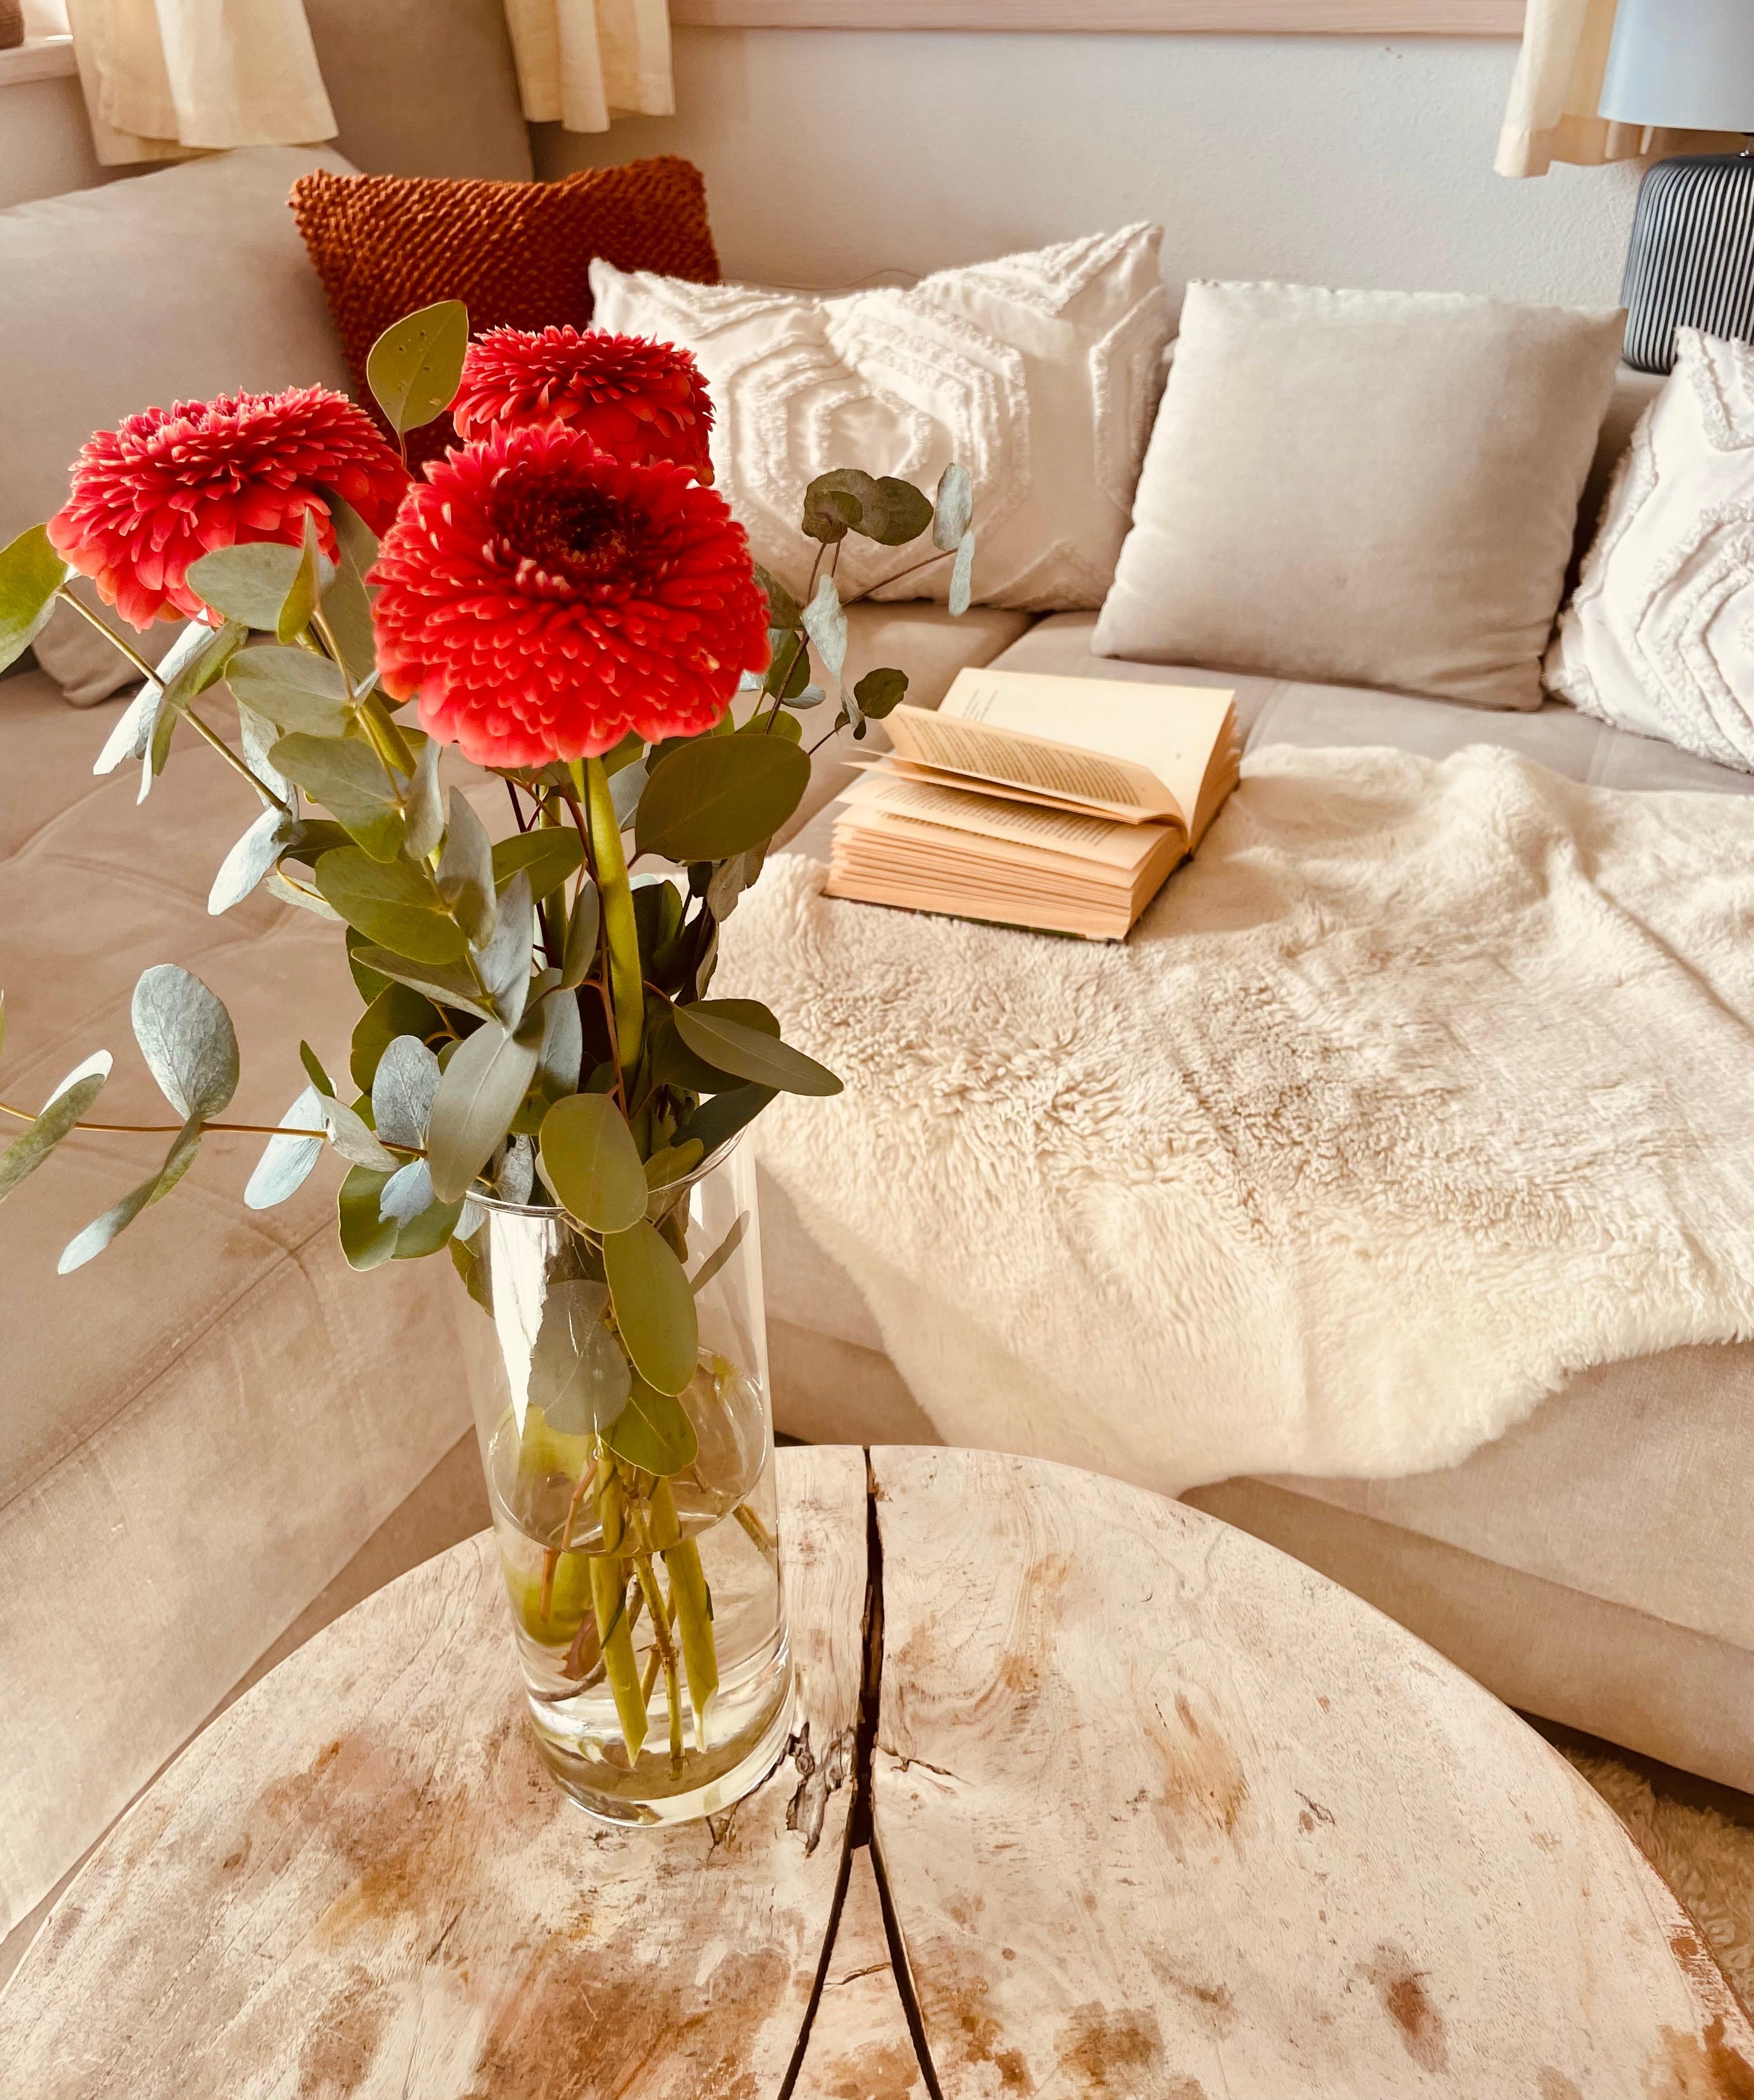 Frische Blumen und ein gutes Buch, ein perfekter Sonntag. #frischeblumen #couch #sonntag #sunday #flowers #books #wohnzimmer 